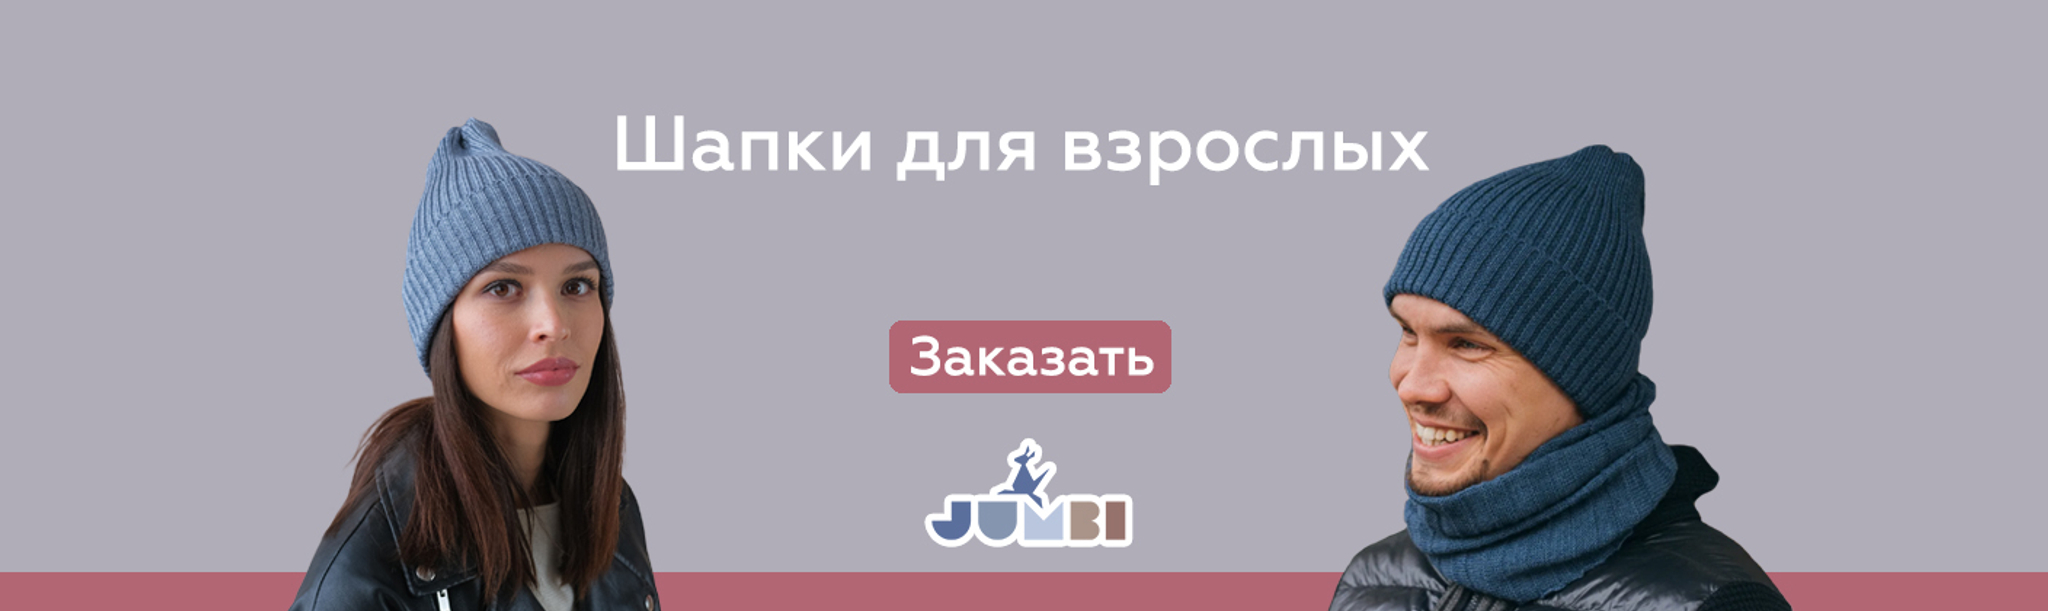 Купить детские головные уборы в интернет магазине вороковский.рф